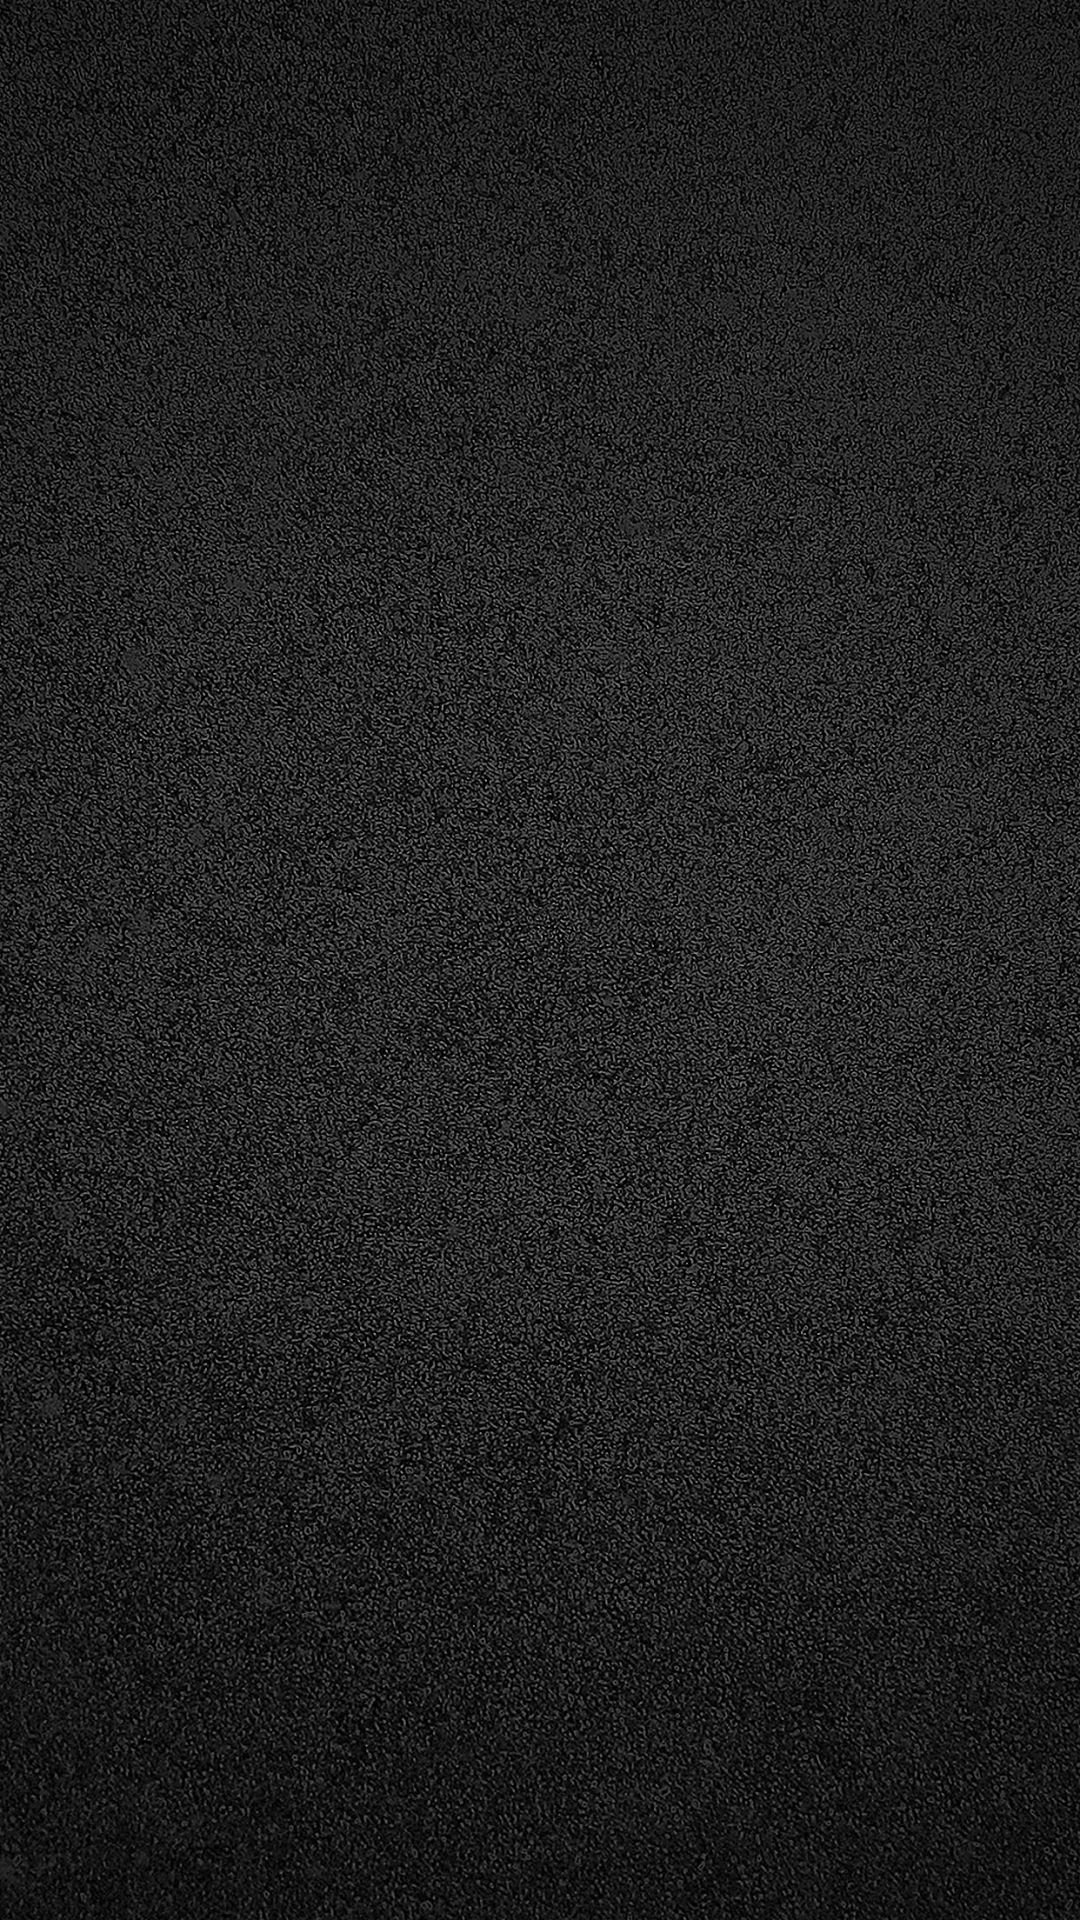 Simple Dark Wallpapers Group 71